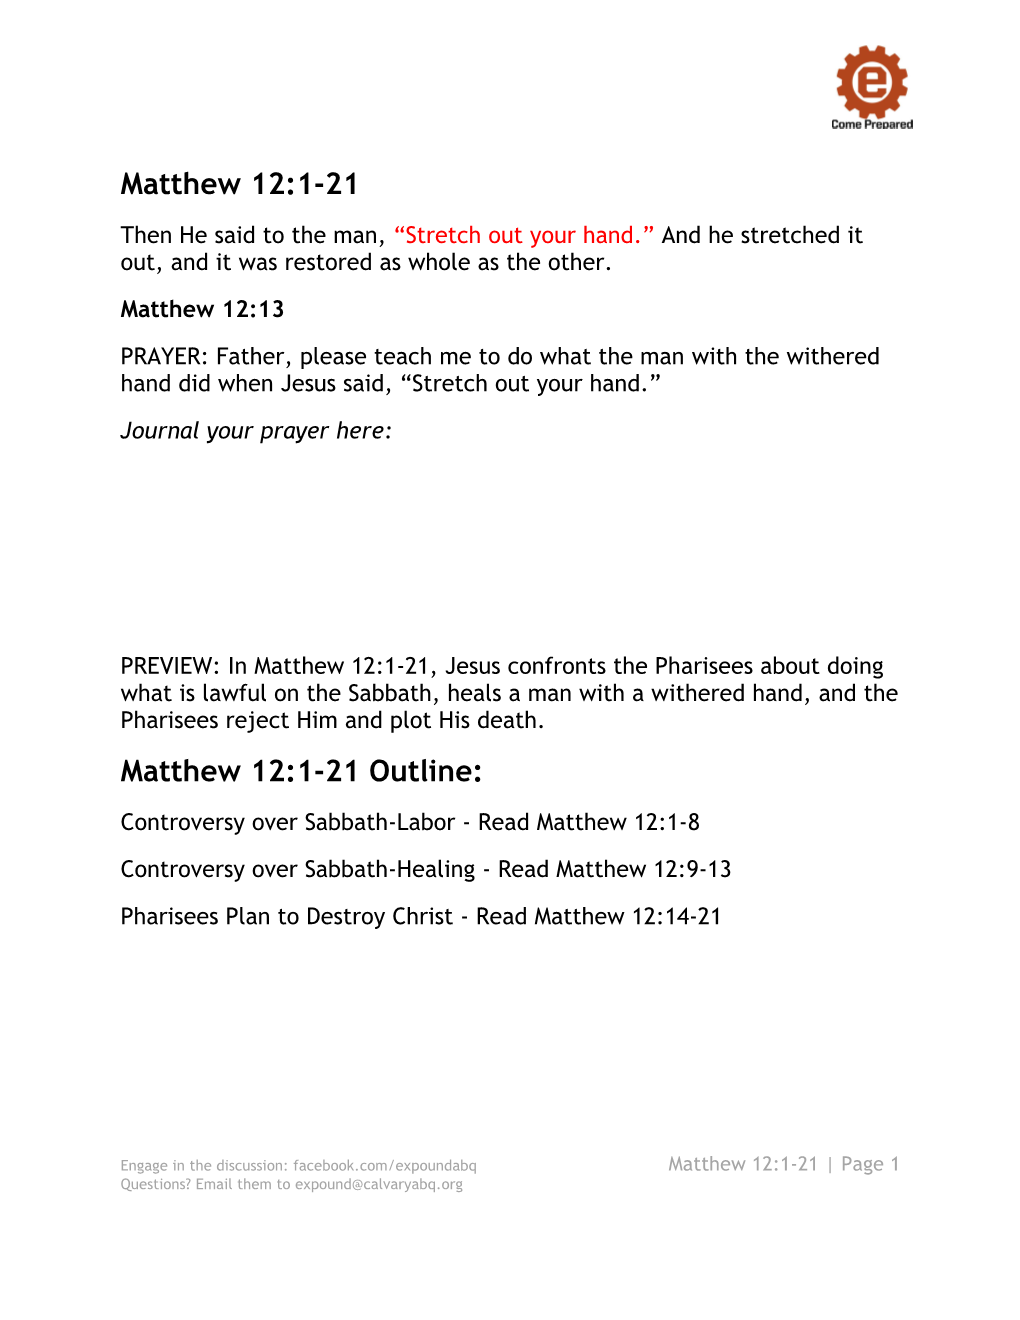 Matthew 12 1-21 Study Guide Handout